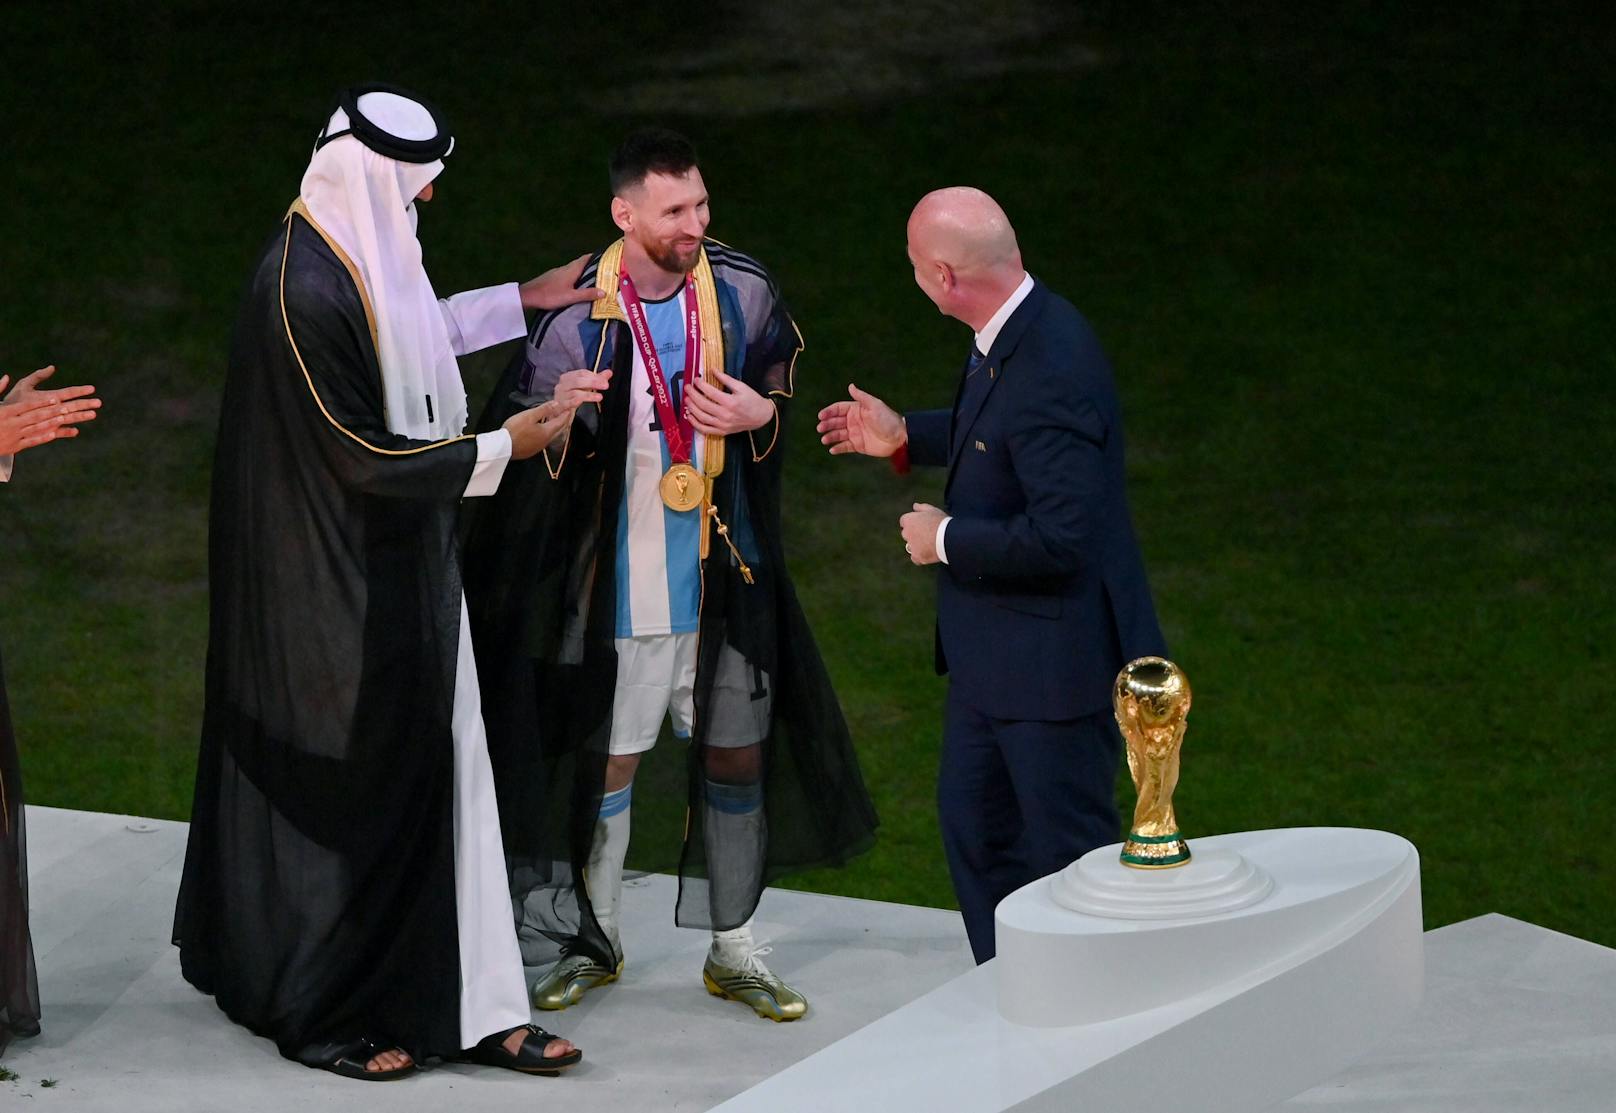 Katar-Umhang für Messi: FIFA bricht eigene Regeln